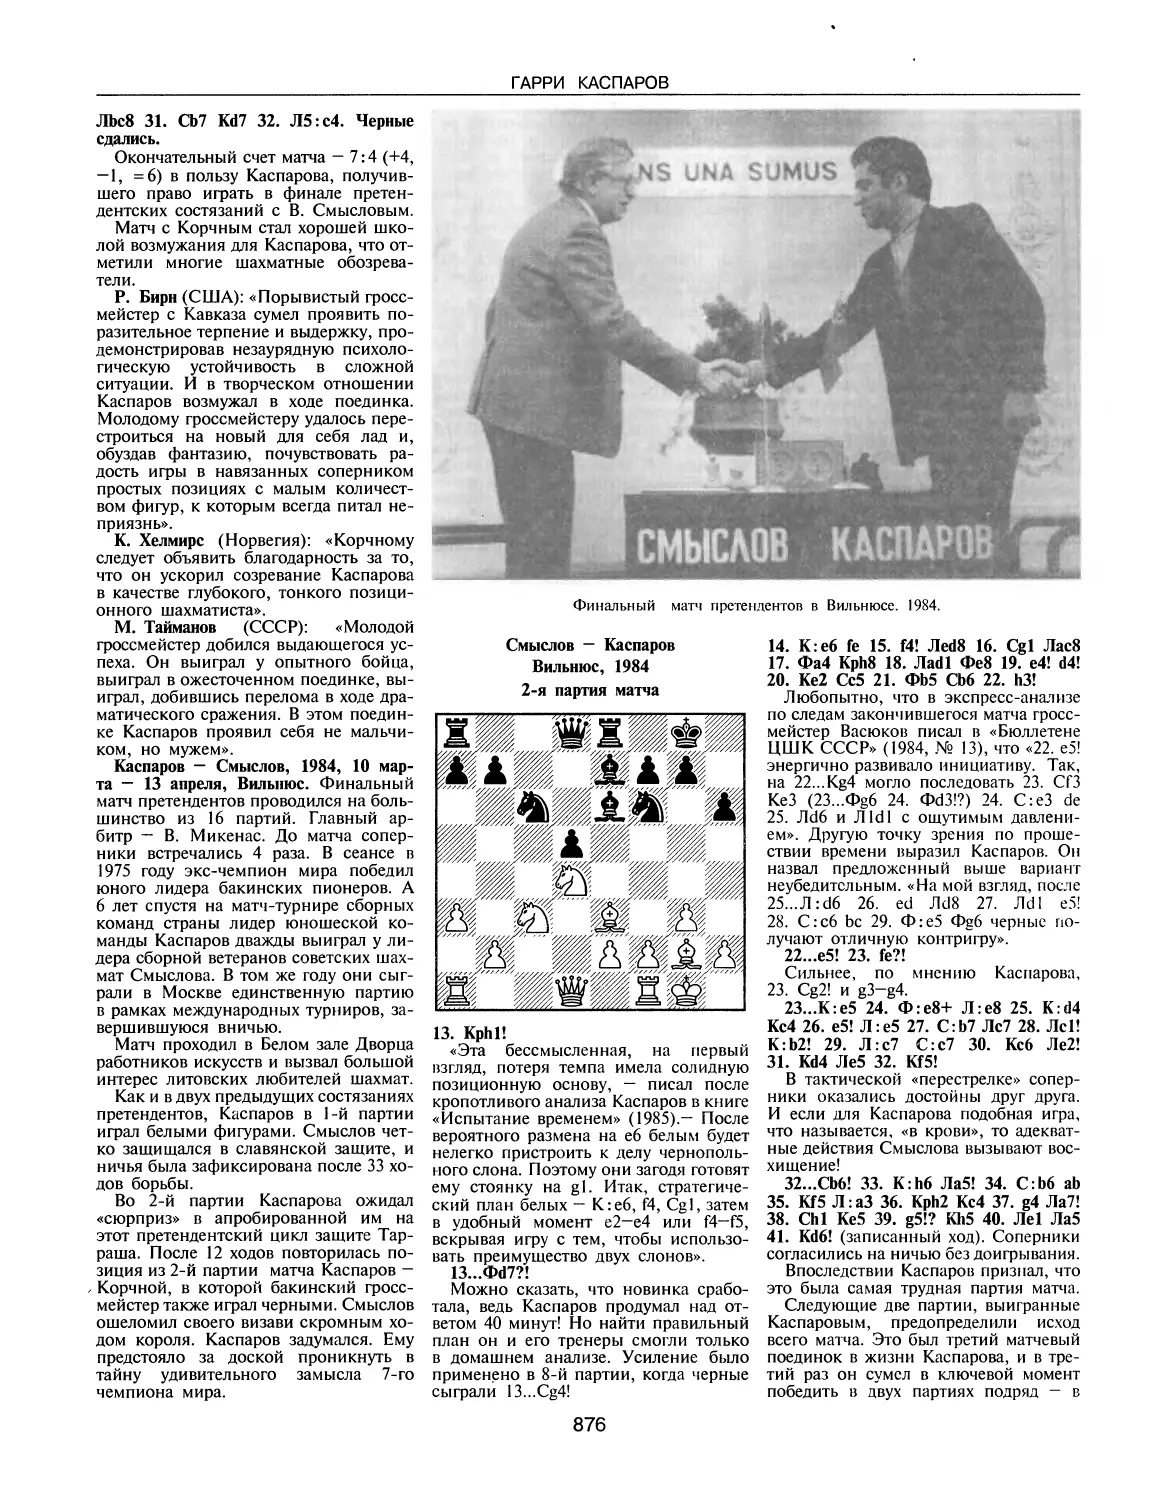 Каспаров — Смыслов, 1984